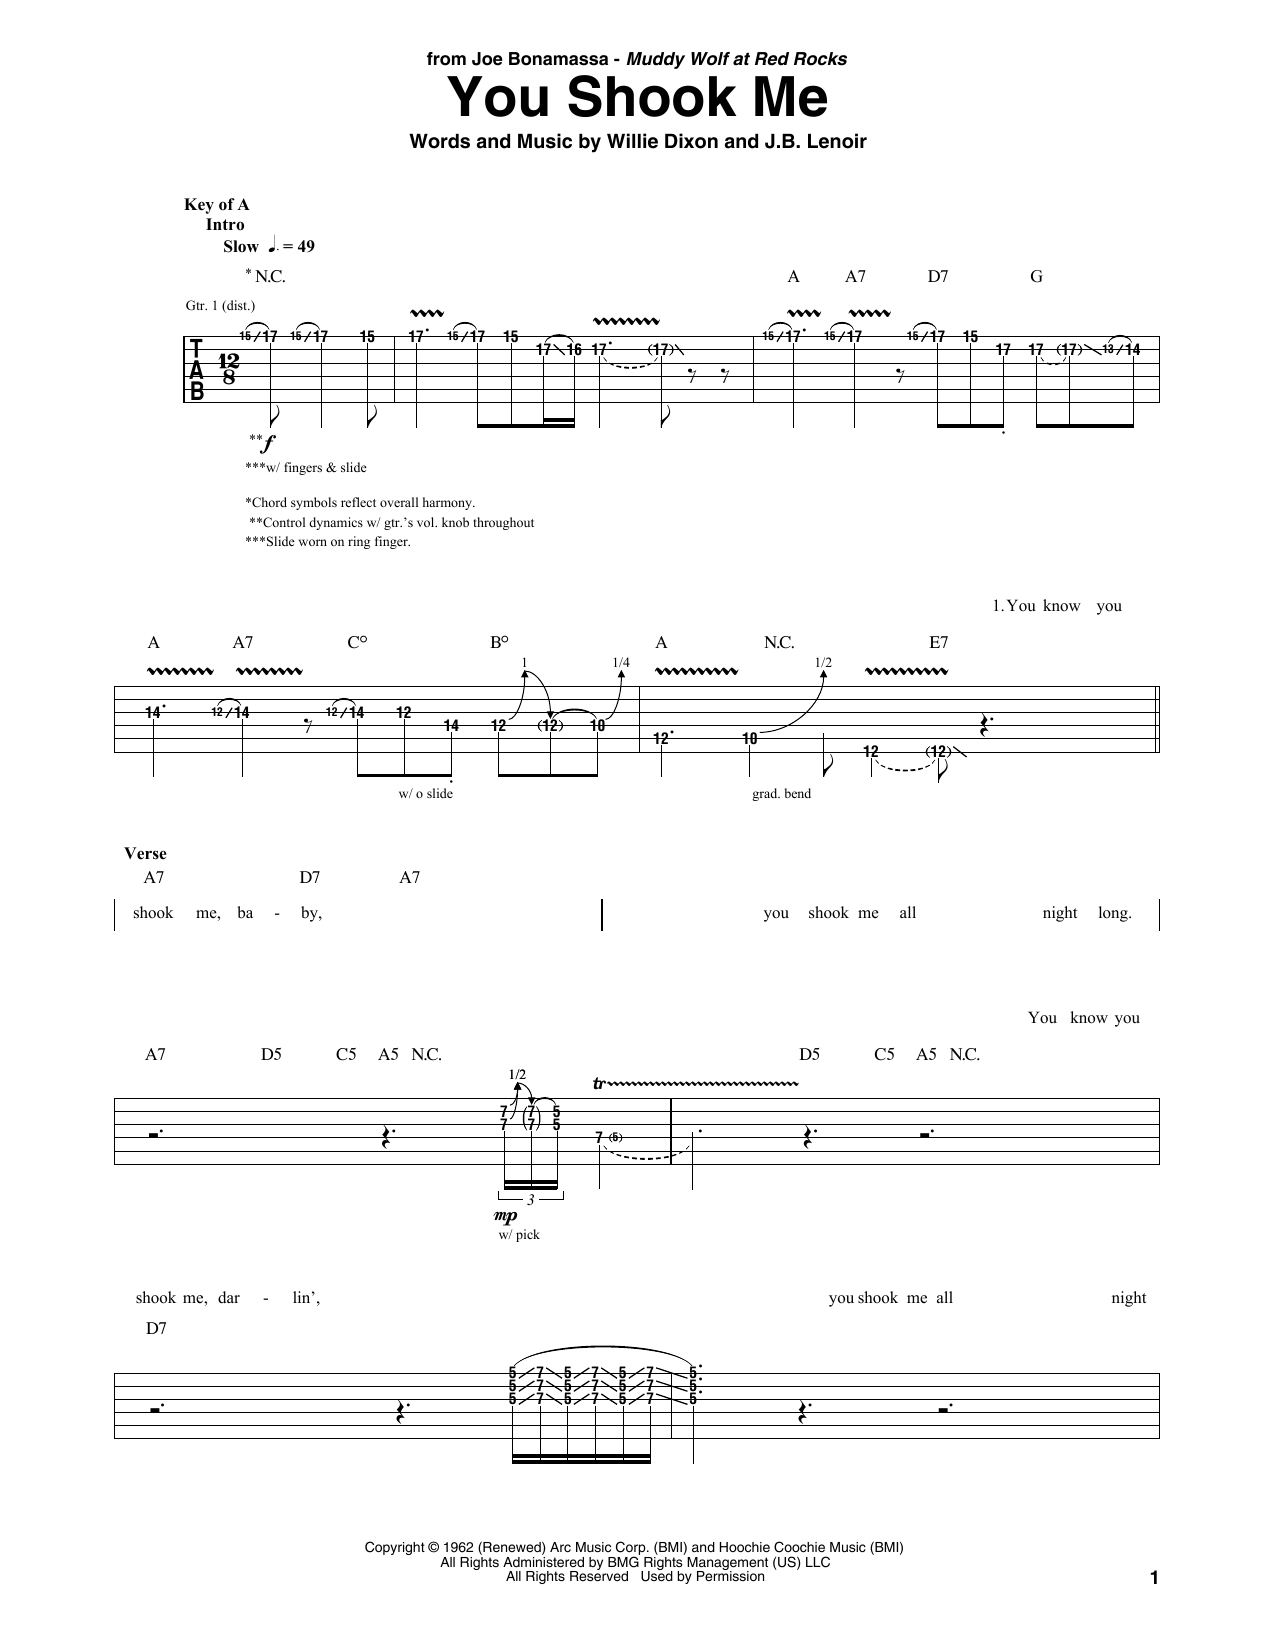 Joe Bonamassa You Shook Me Sheet Music Notes & Chords for Guitar Tab - Download or Print PDF